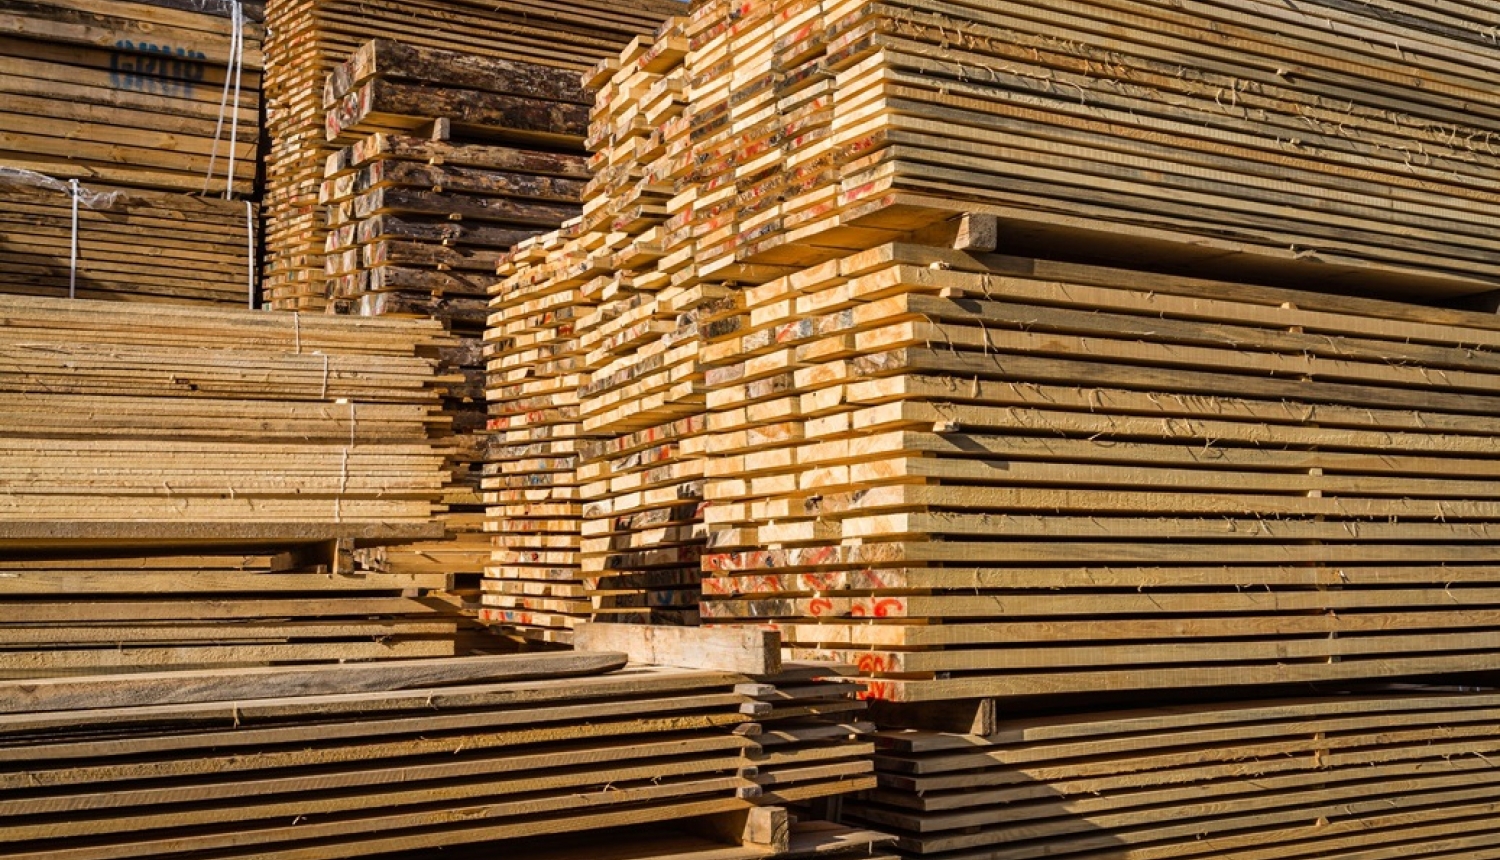 MK lemj par UIN atlaides piešķiršanu diviem kokrūpniecības uzņēmumiem – SIA “AmberBirch” un SIA “Rettenmeier Baltic Timber”